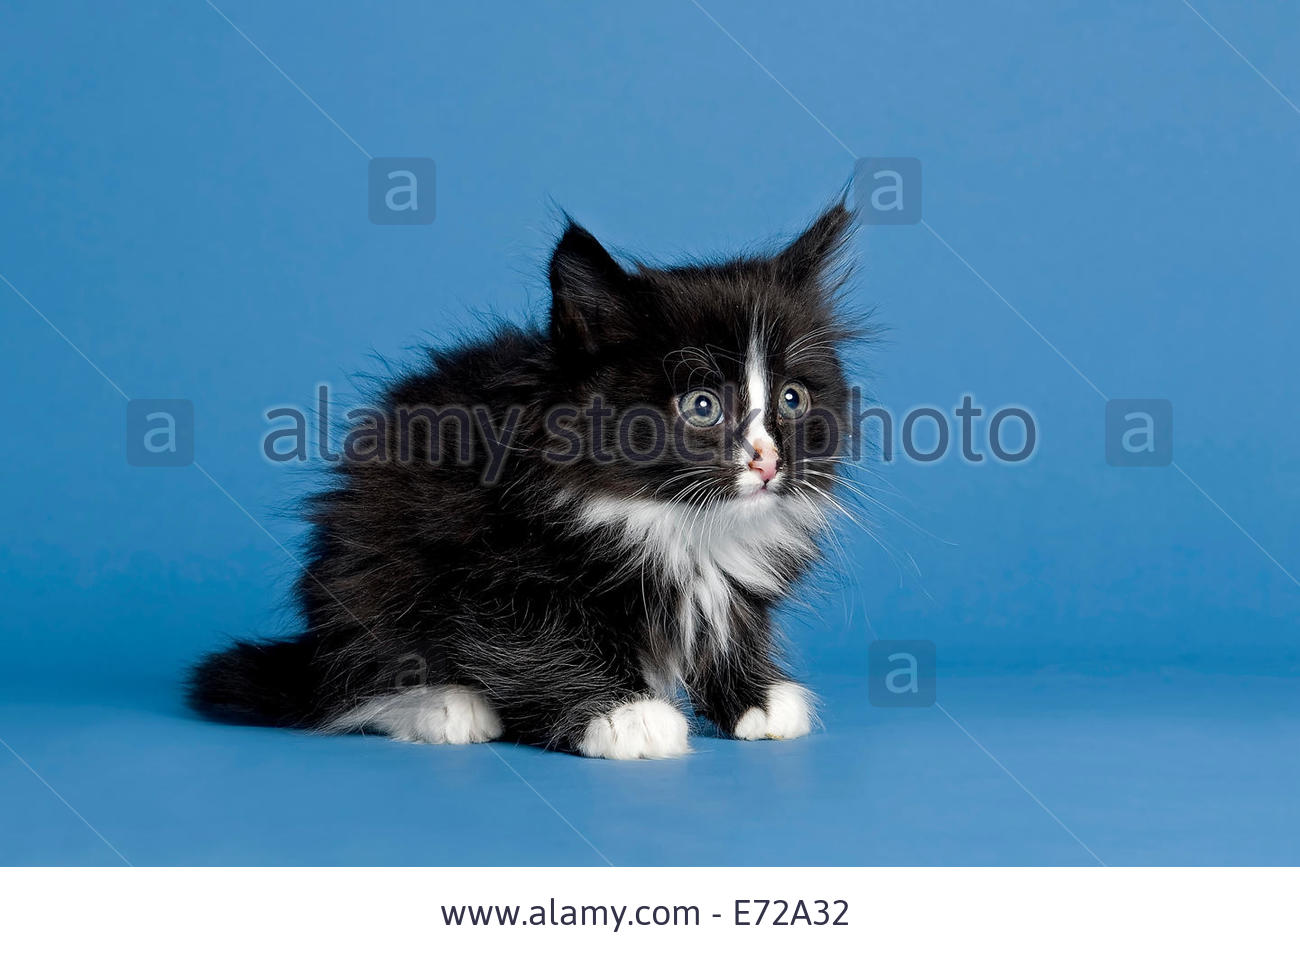 Cute Little Black And White Norwegian Forest Kitten Sitting